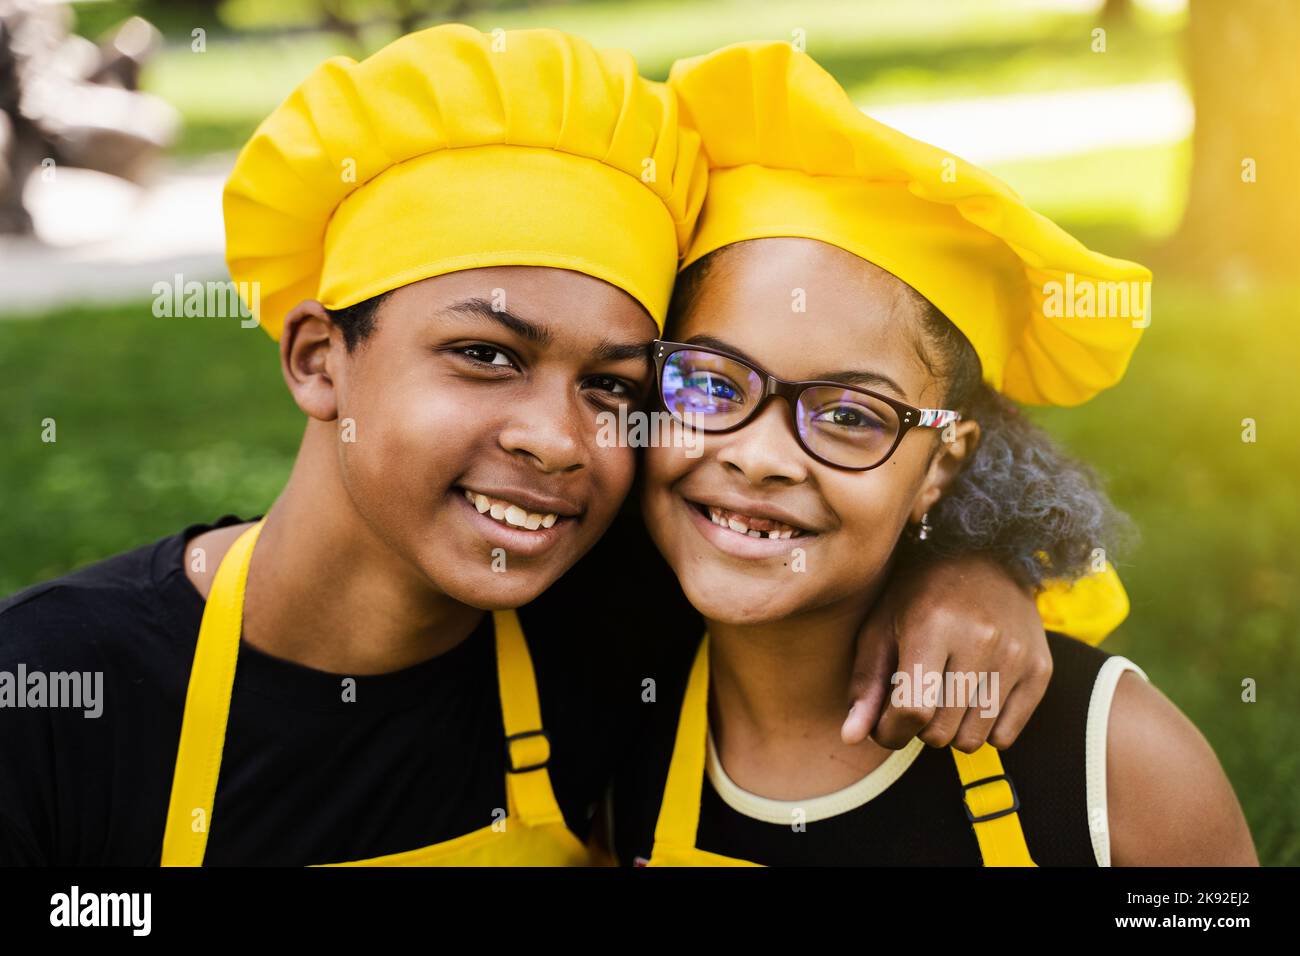 Les enfants africains cuisinent dans les chefs chapeau et uniformes jaunes  souriant portrait de près . L'adolescent africain et la fille noire ont du  plaisir et cuisent la nourriture Photo Stock -